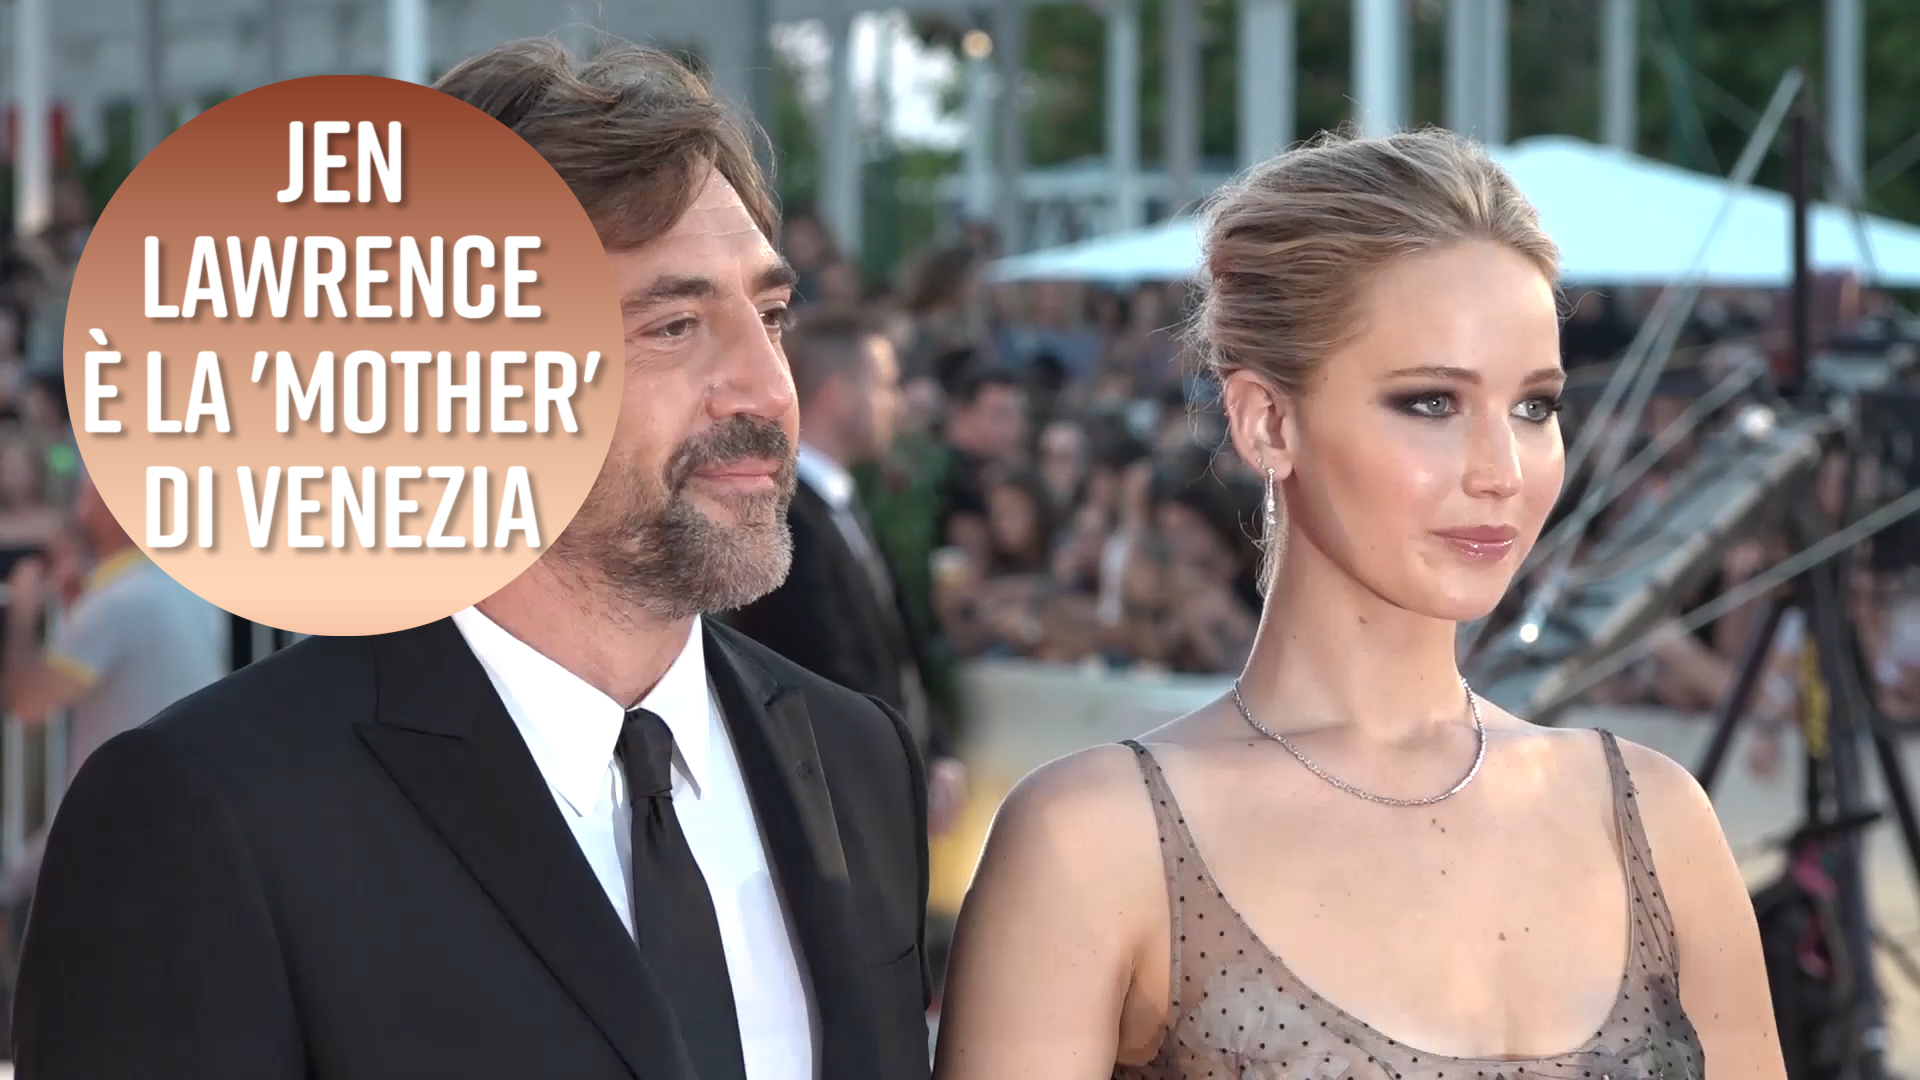 Jennifer Lawrence e' la 'Madre' di Venezia 74